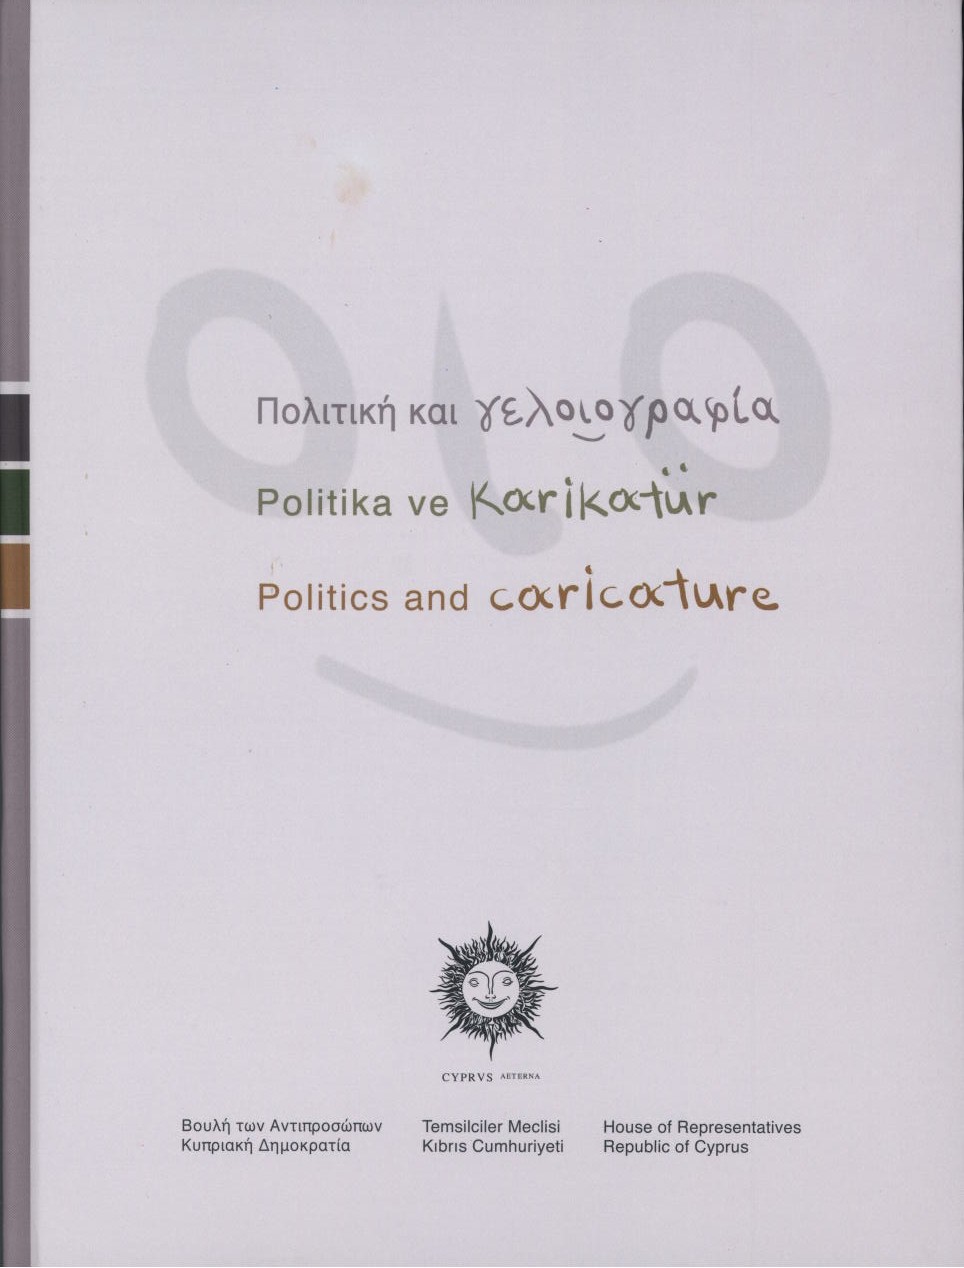 Πολιτική και γελοιογραφία 1960-2000 - Politika ve karikatür 1960-2000 - Politics and caricature 1960-2000